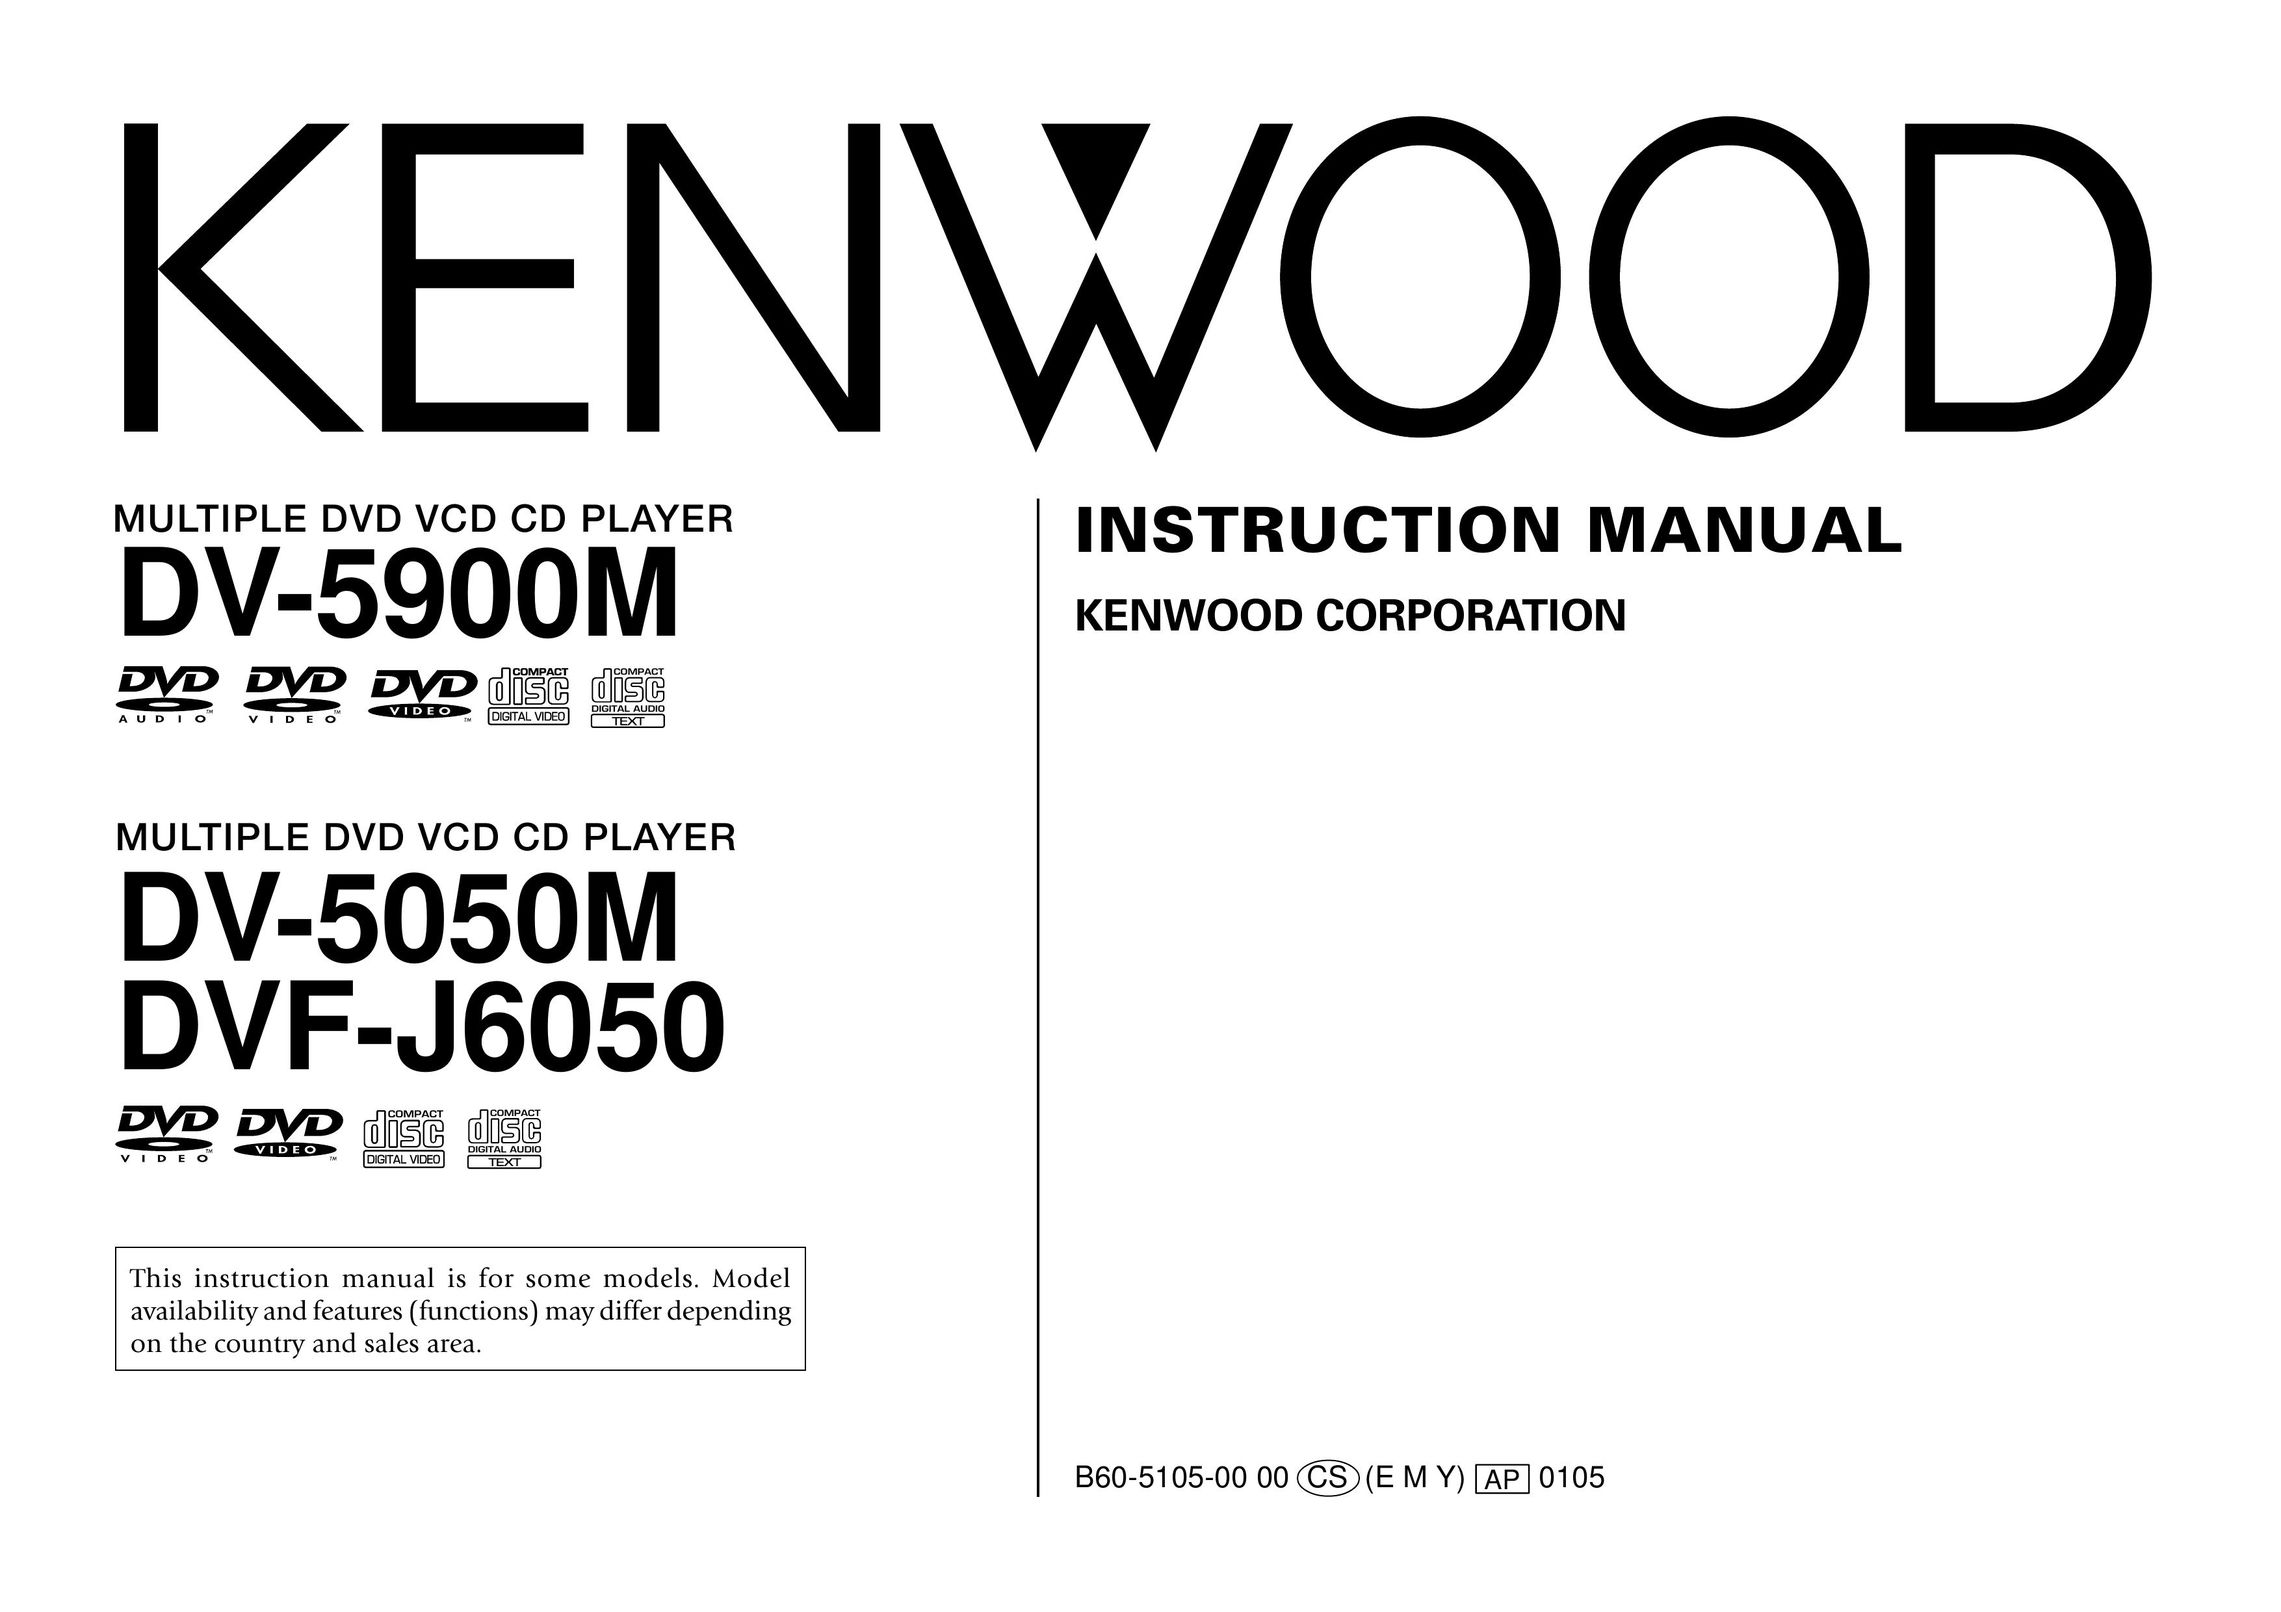 Kenwood DV-5050M DVD Player User Manual